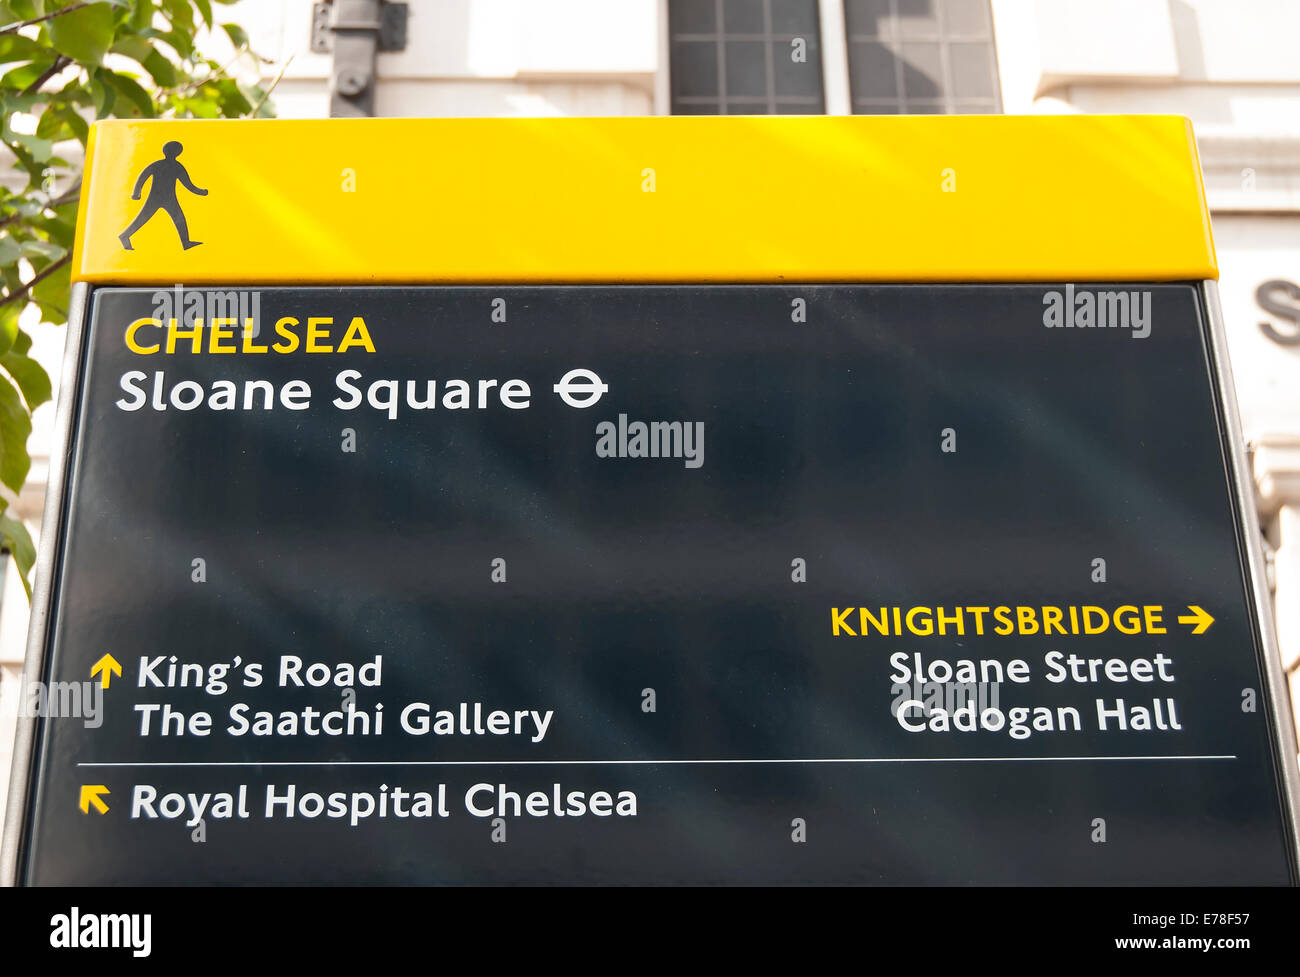 Pilastro signpost in Sloane Square, a Chelsea, Londra, dando indicazioni per raggiungere i luoghi di interesse nelle vicinanze Foto Stock